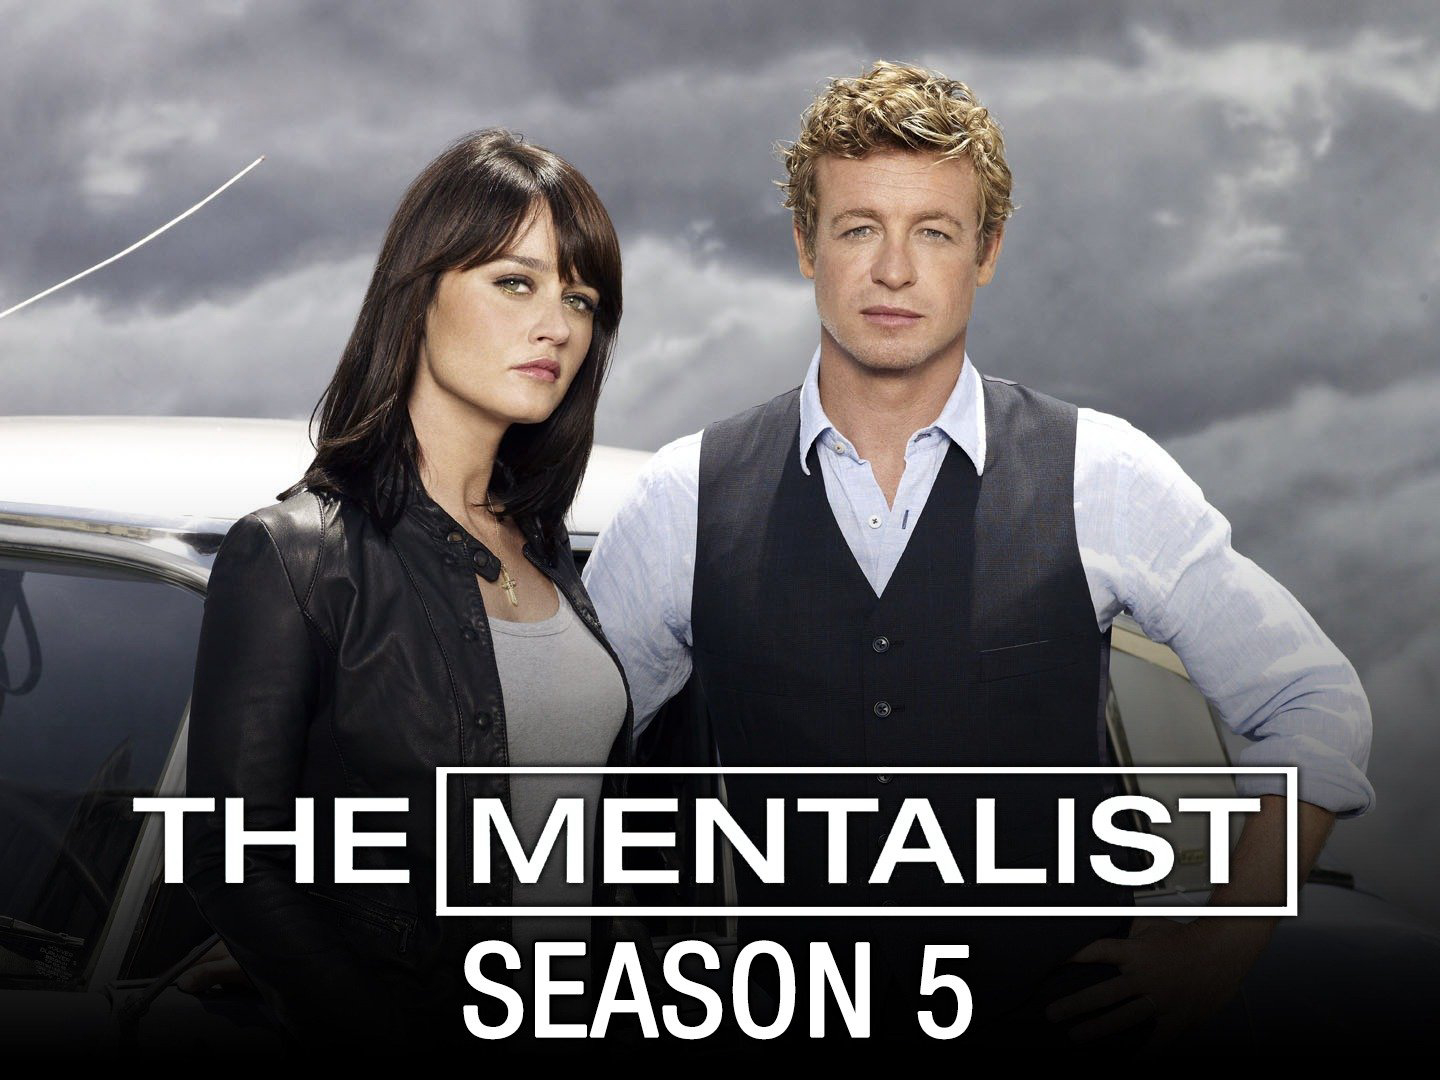 The Mentalist (Season 5) / The Mentalist (Season 5) (2013)